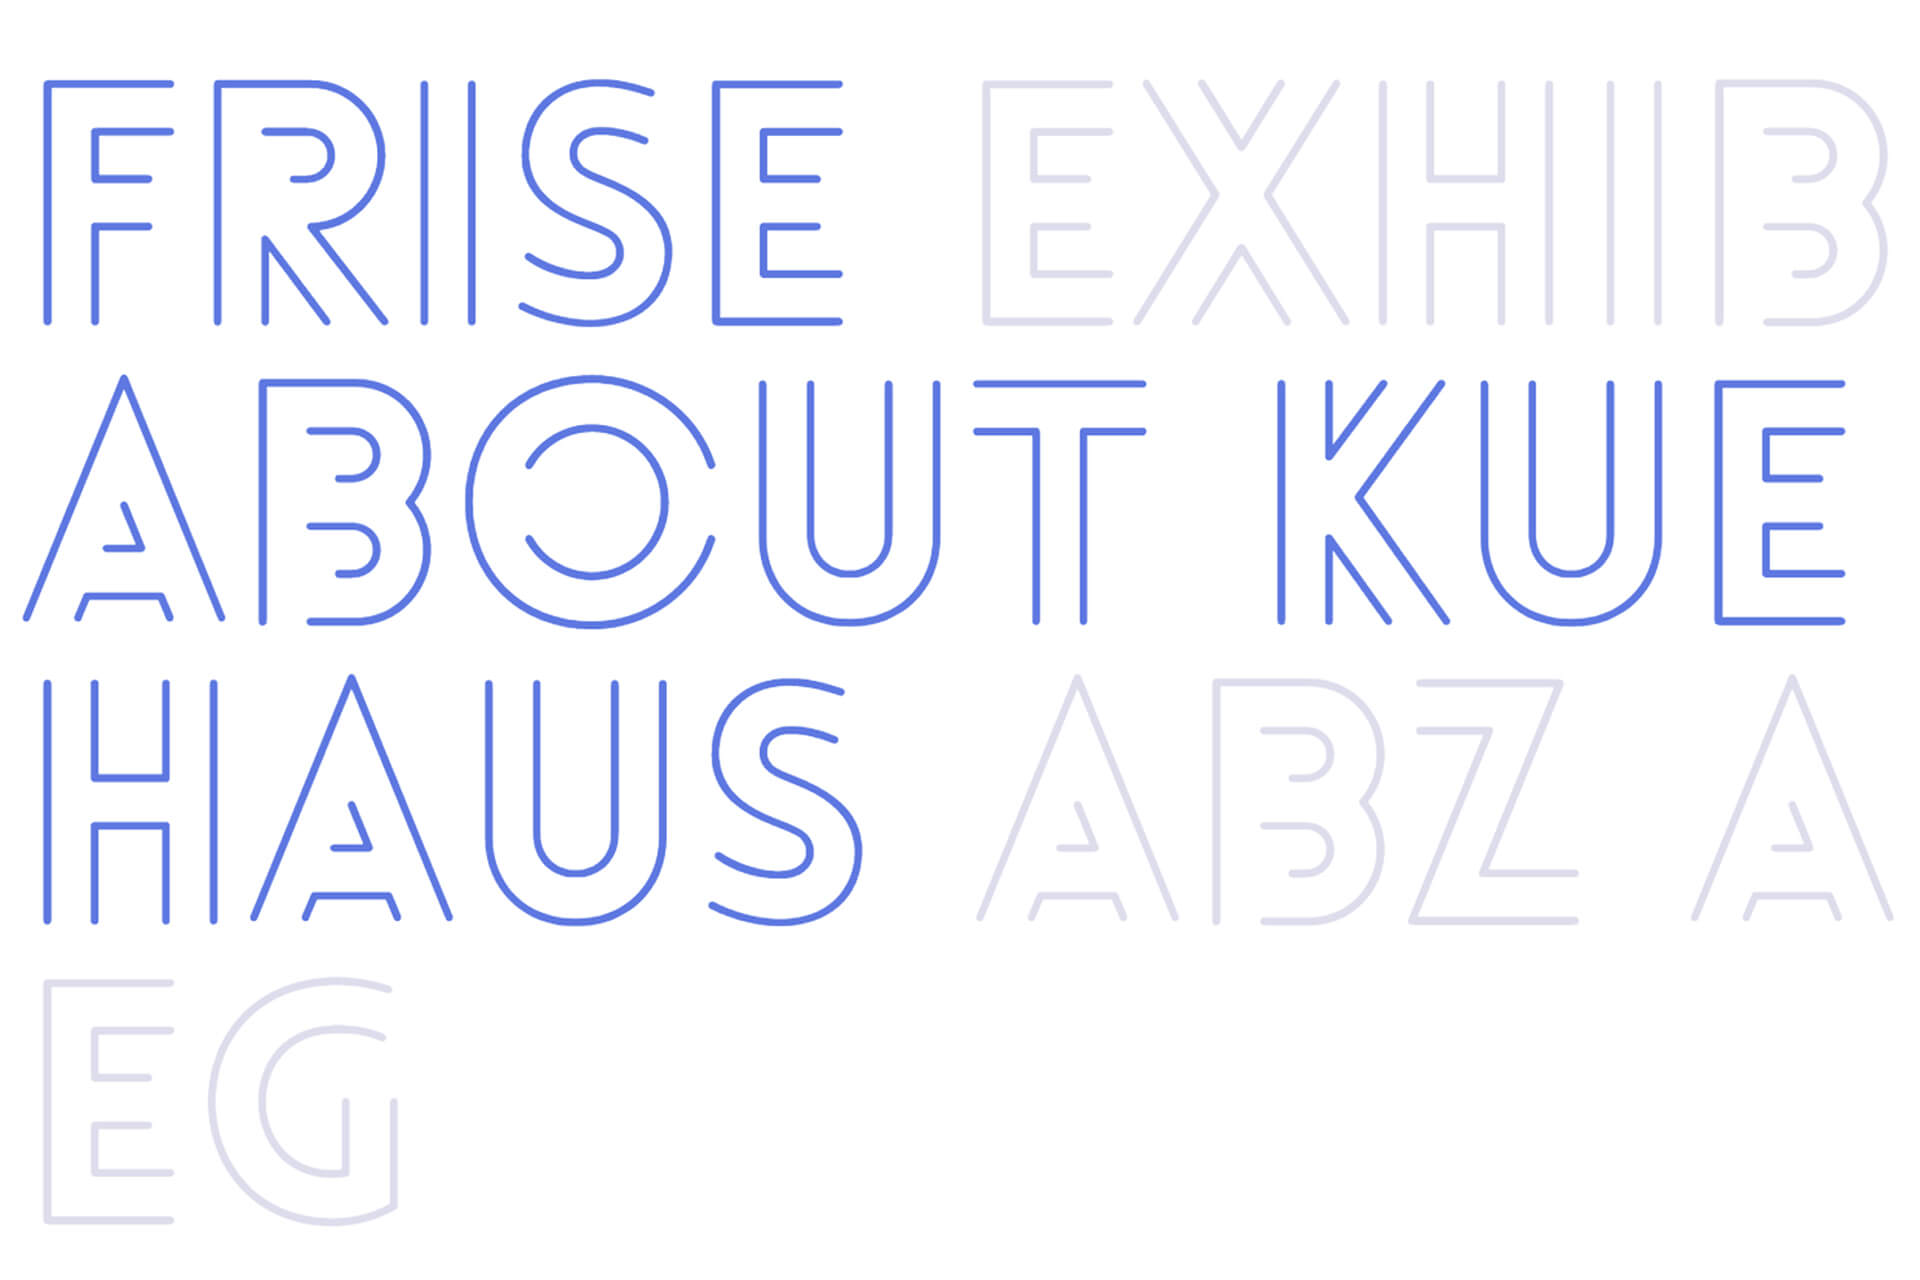 Detail der Typografie mit offener Outline für die Navigation der Frise-Website mit u.a. den Wörtern: Frise, About ABZ.